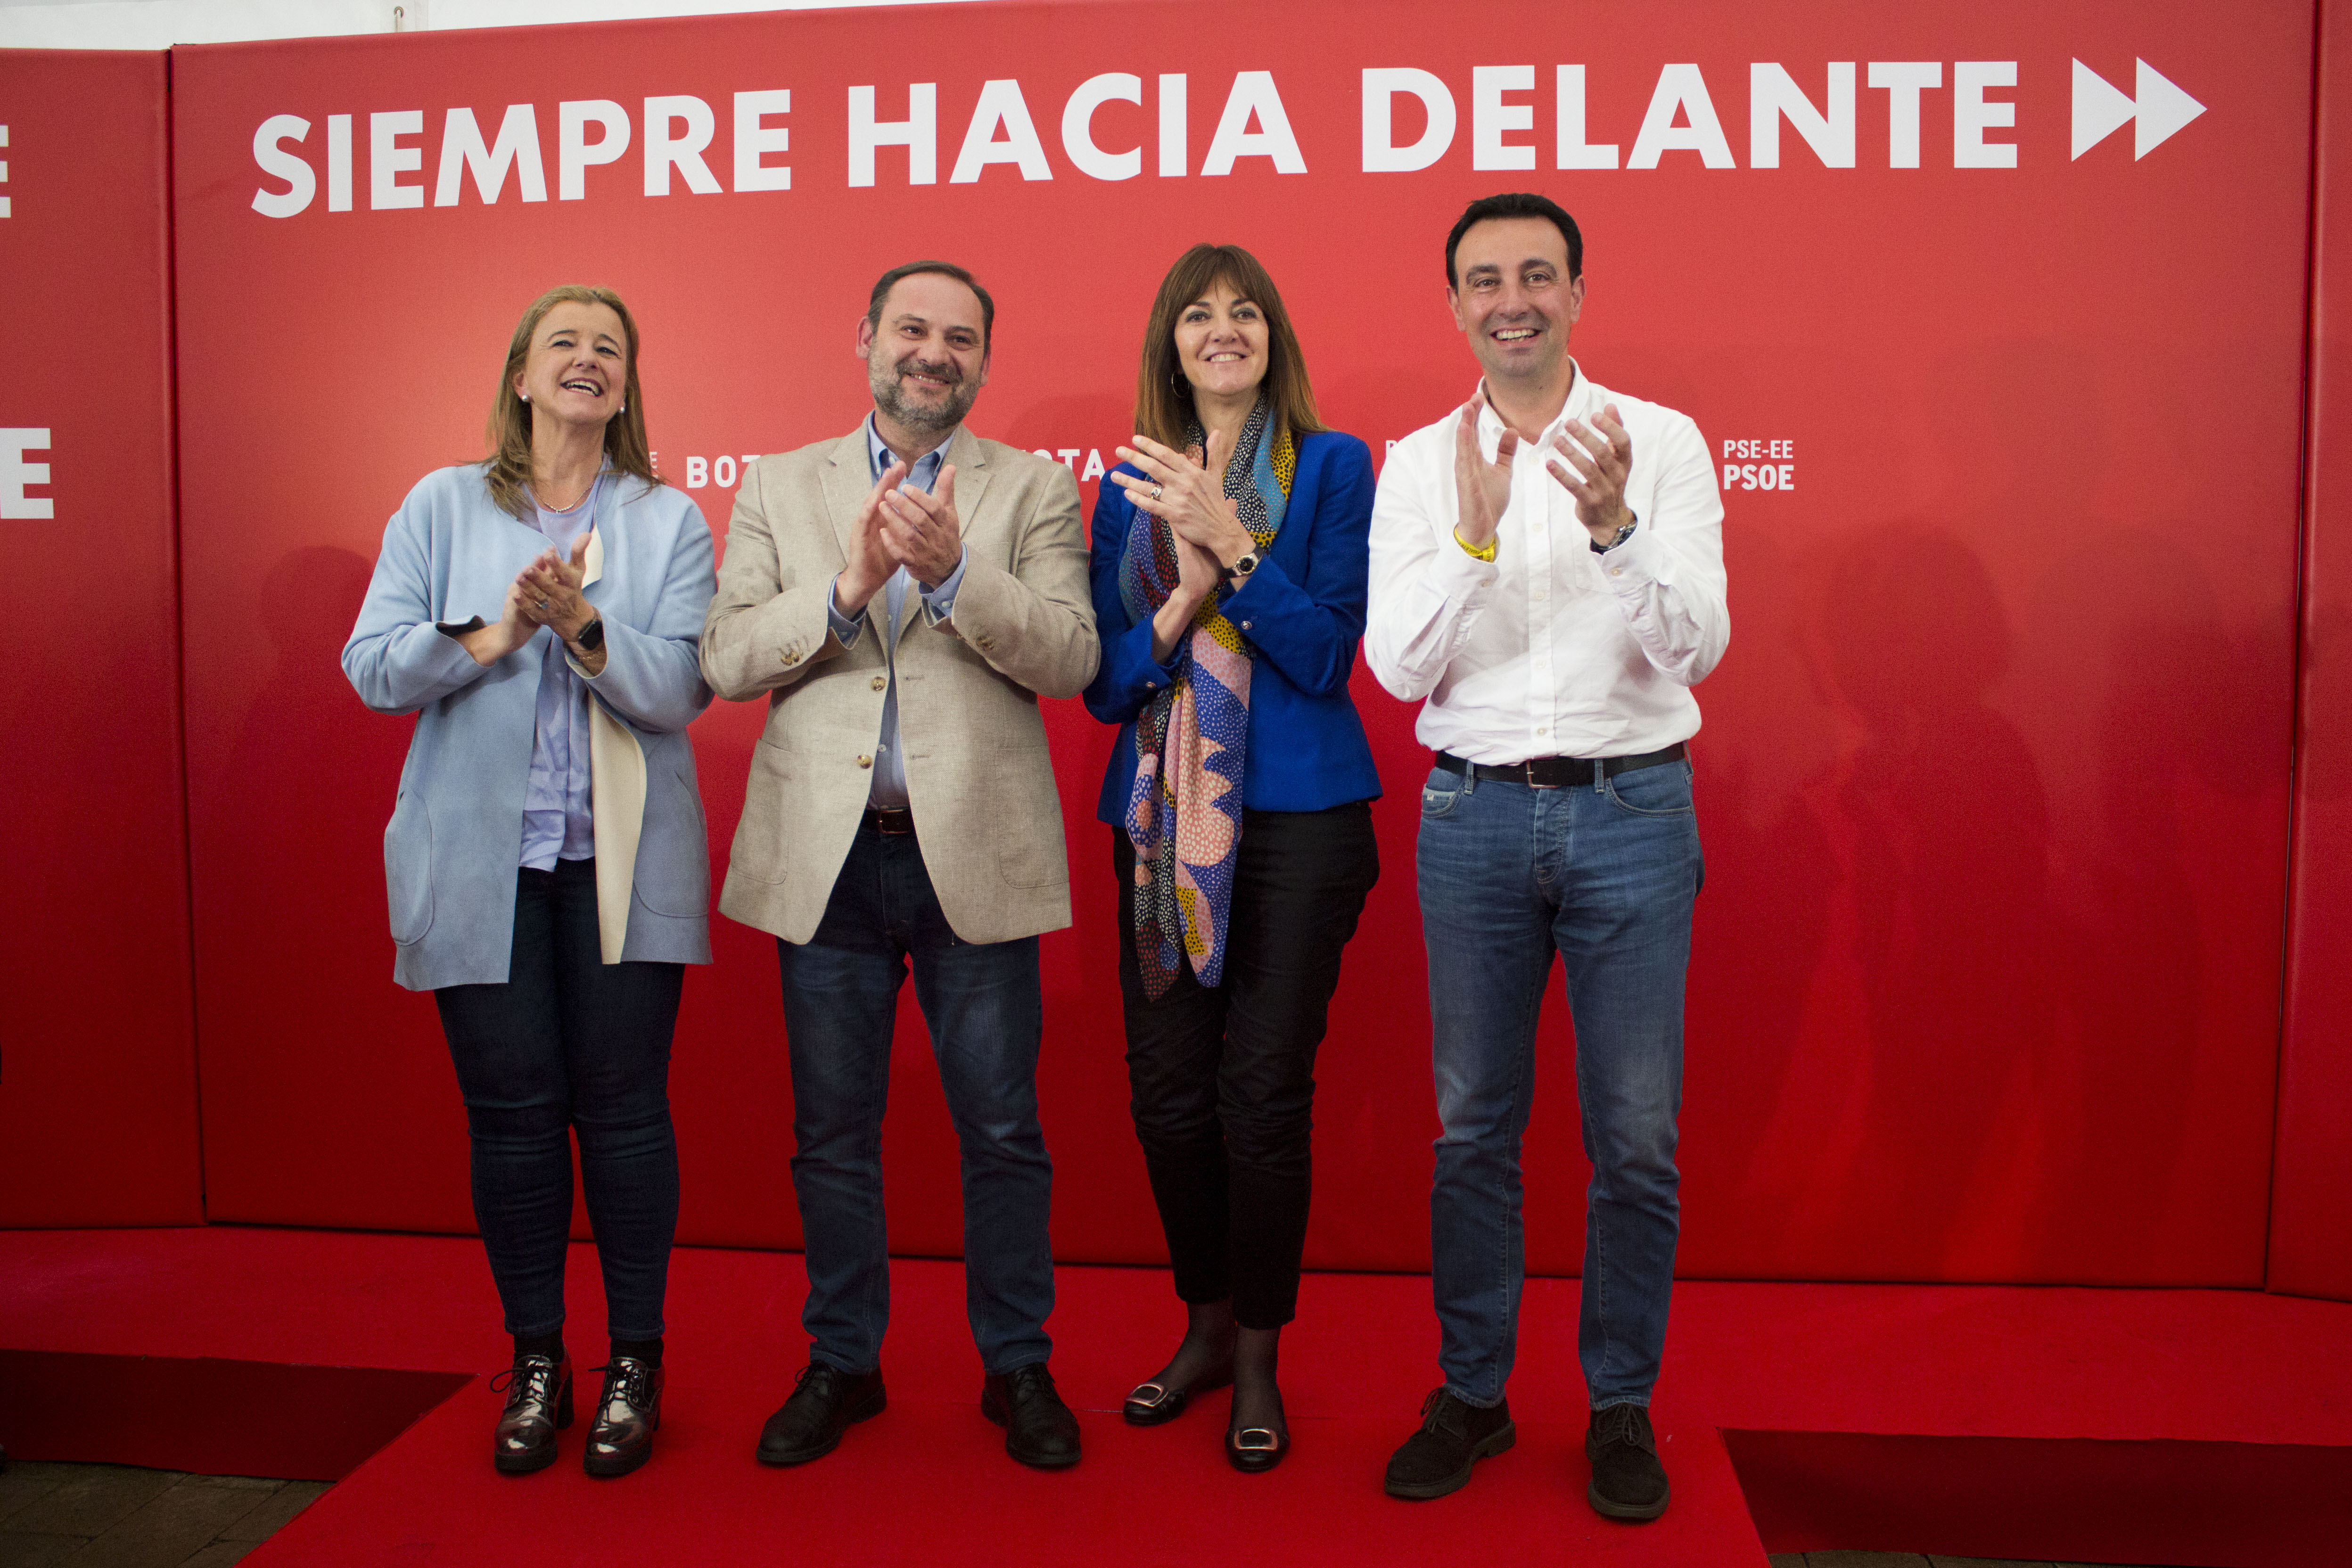 Acto político en Portugalete, con José Luis Ábalos, Idoia Mendia, Teresa Laespada y Mikel Torres